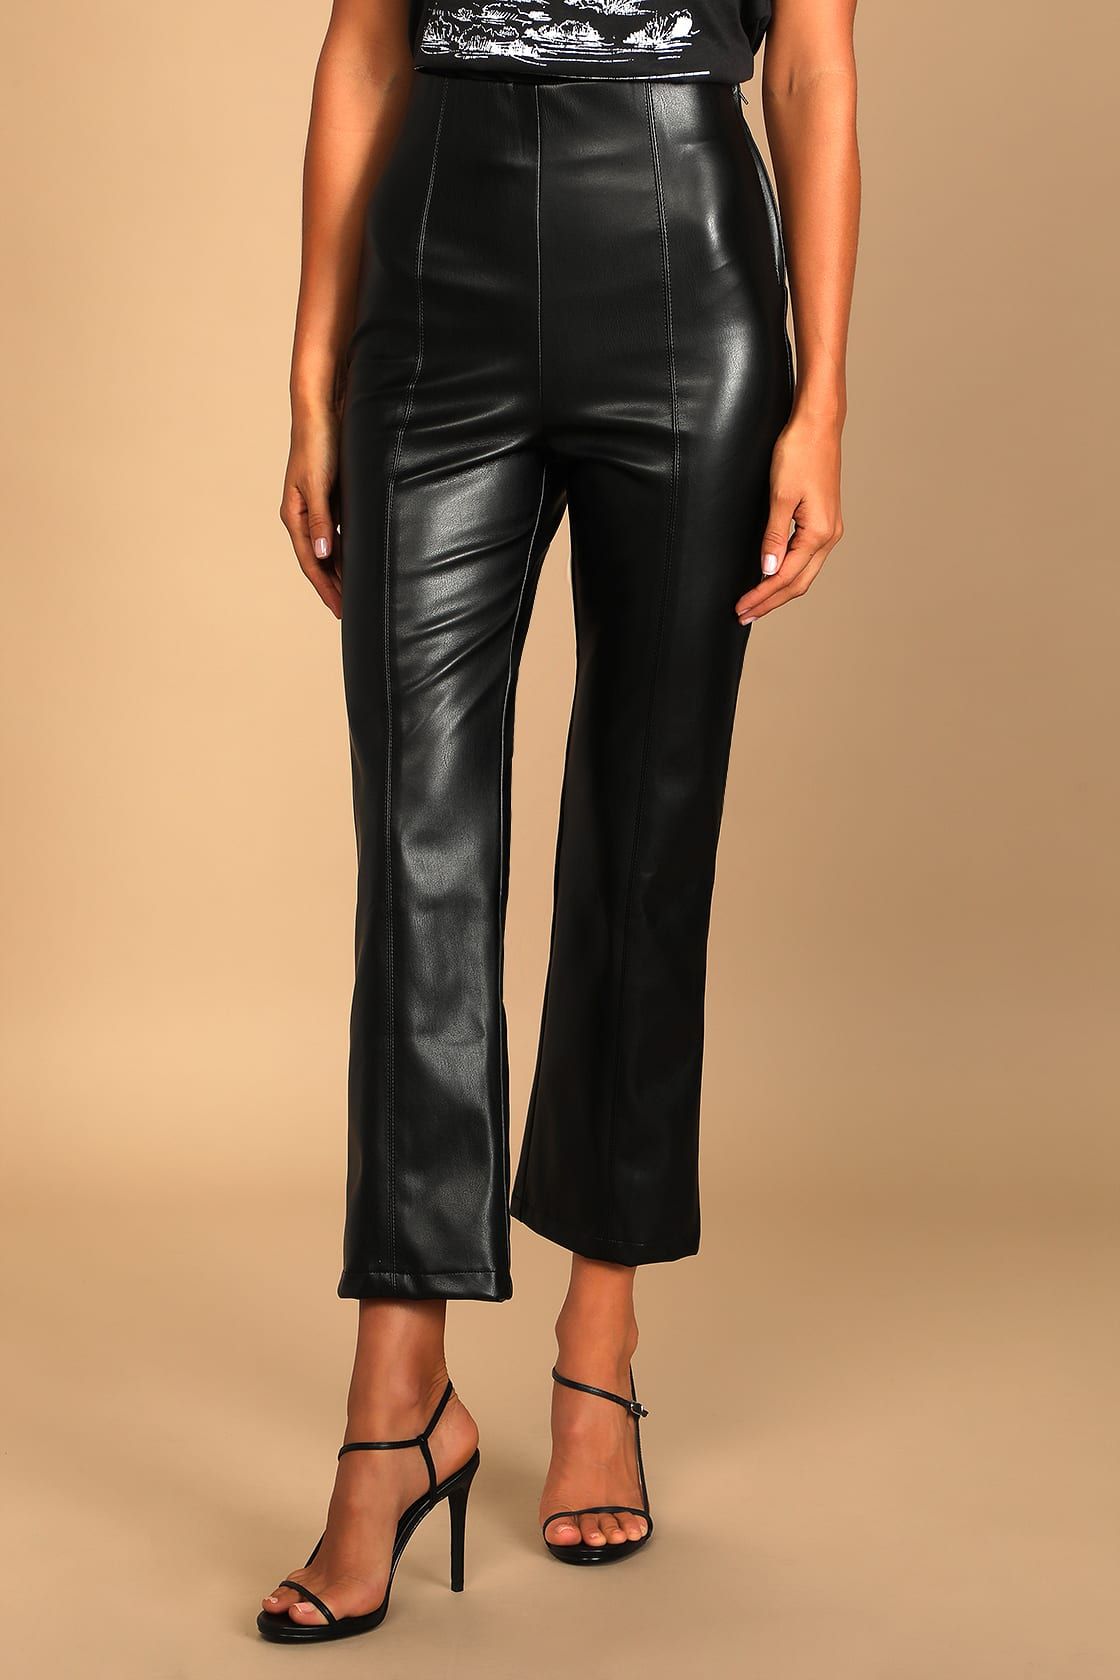 Maximum Chic Black Vegan Leather Cropped Flare Pants | Lulus (US)